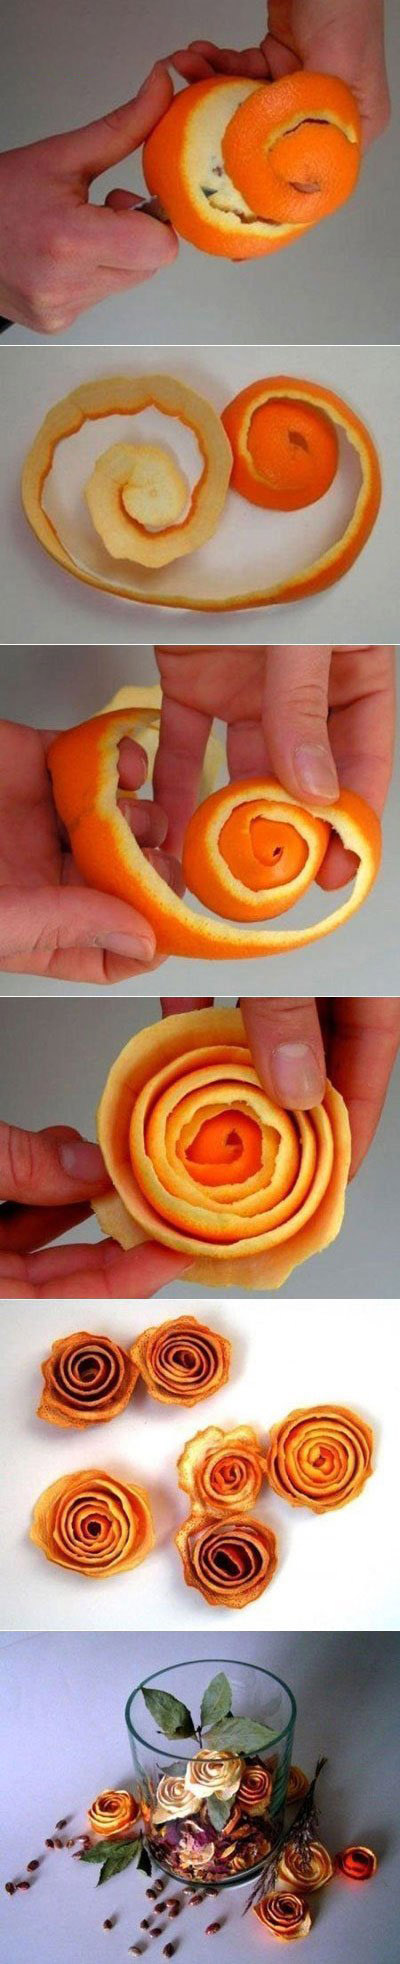 橙子皮手工制作逼真玫瑰花